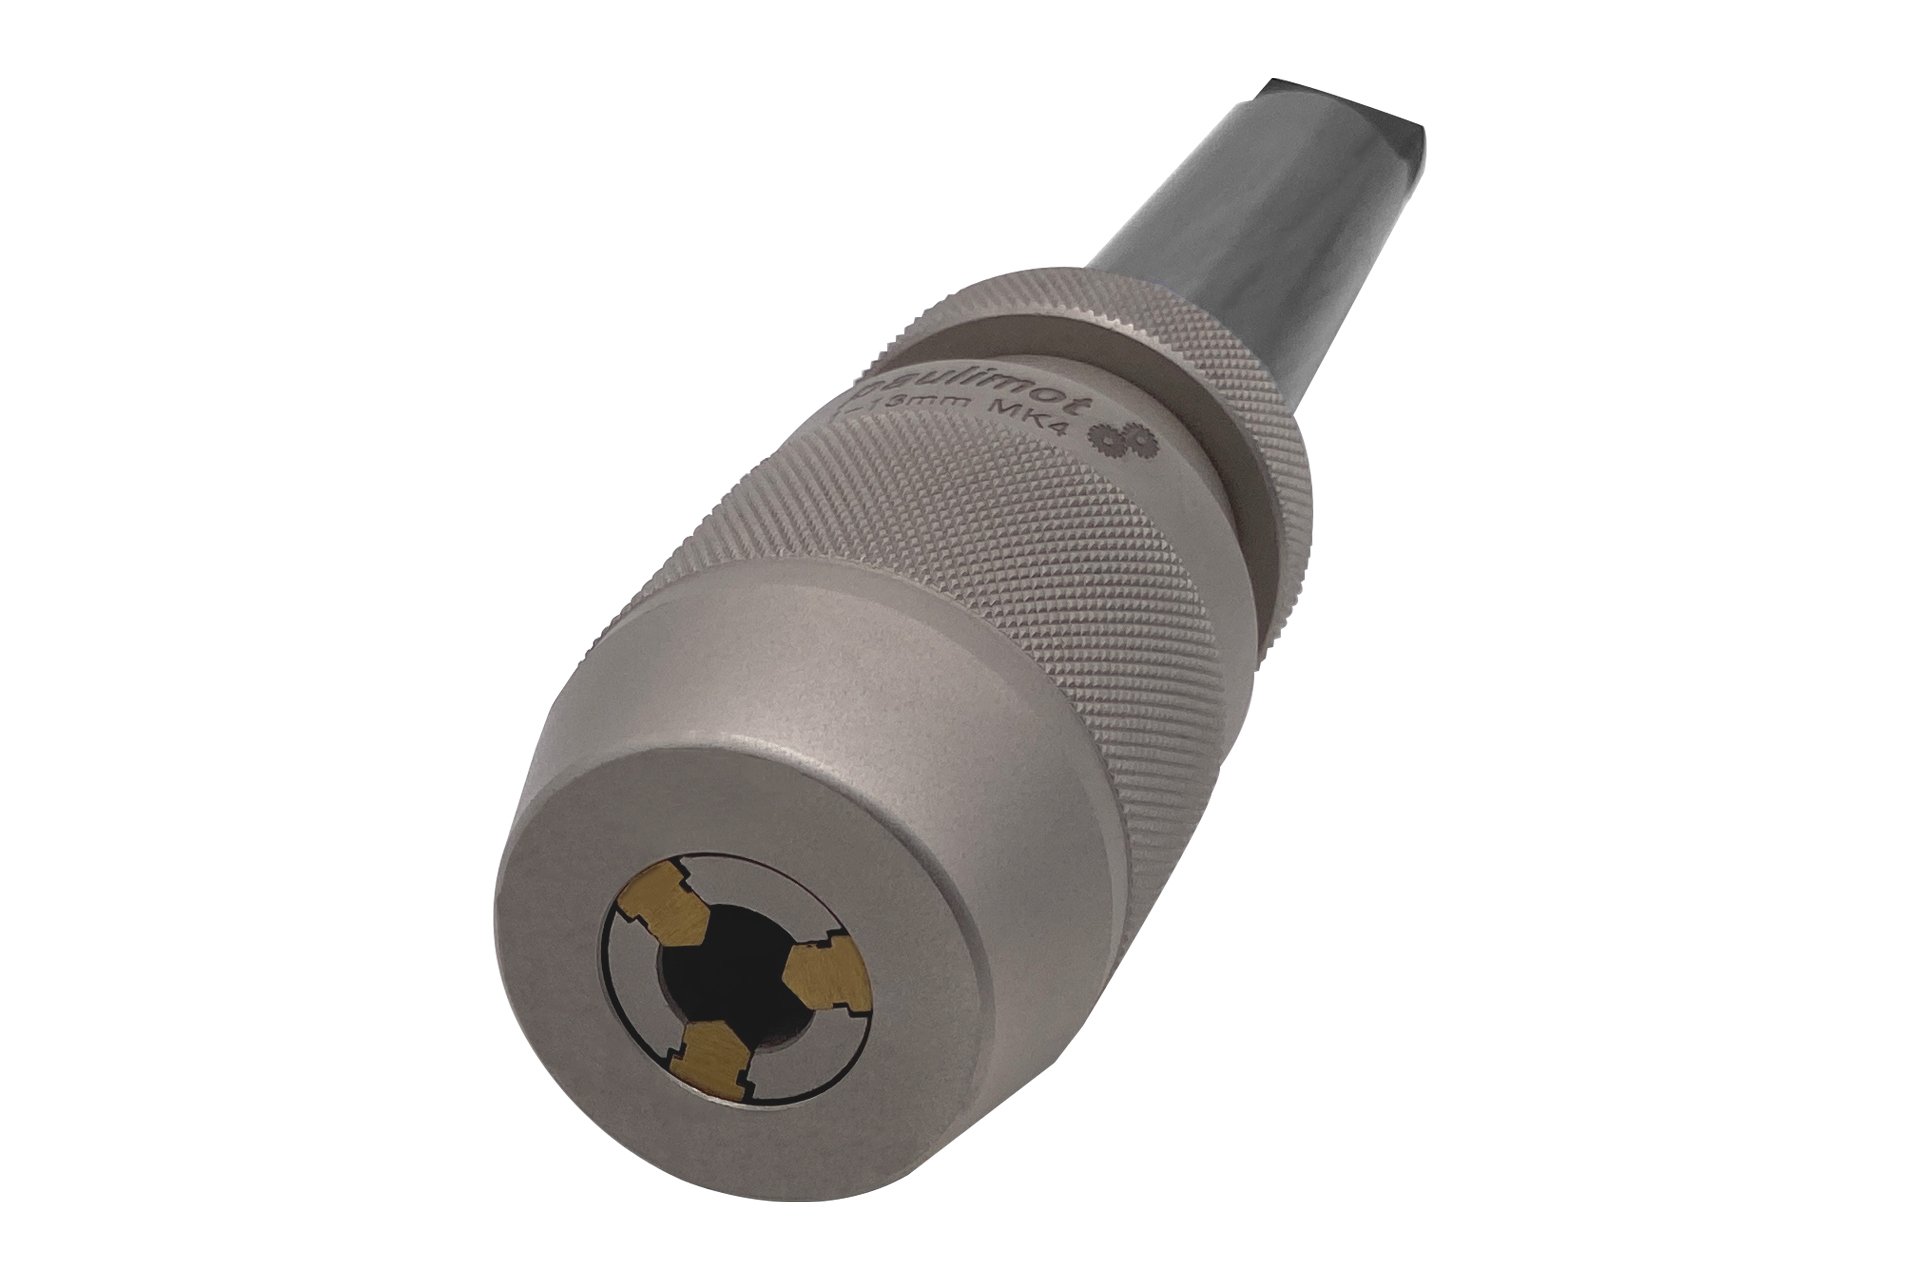 Präzisions-Schnellspann-Bohrfutter 1 - 13 mm MK4